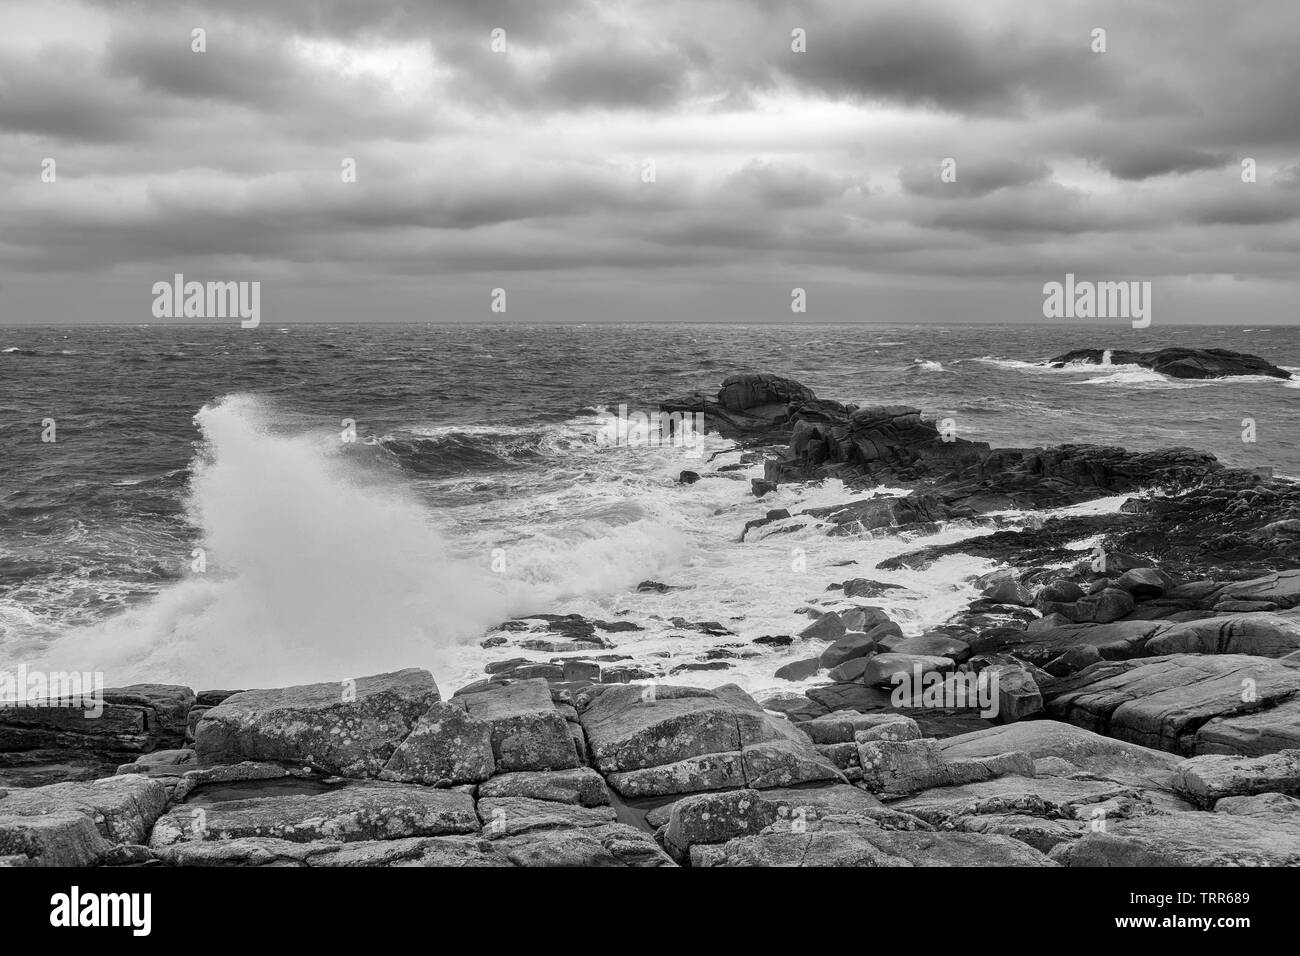 Porth Hellick punto en marea baja y en un fuerte viento onshore, Saint Mary's, Isles of Scilly, UK: versión en blanco y negro Foto de stock